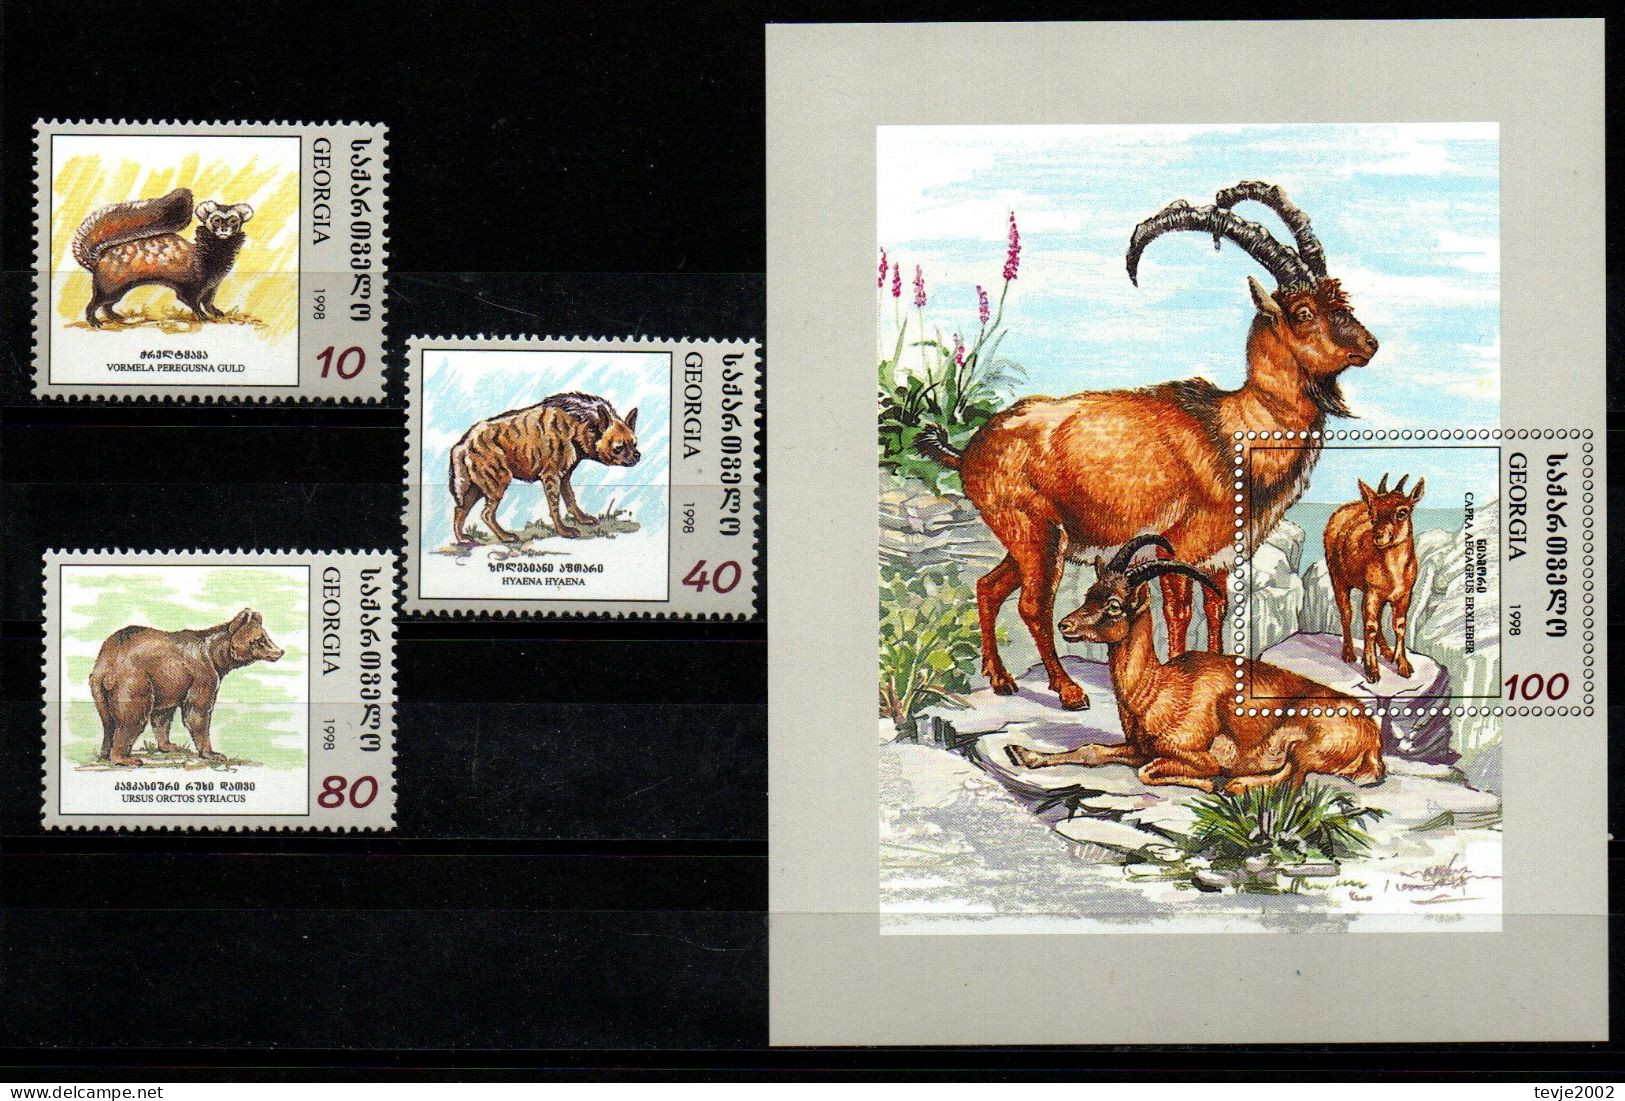 Georgien 1999 - Mi.Nr. 298 - 300 + Block 18 - Postfrisch MNH - Tiere Animals - Georgia